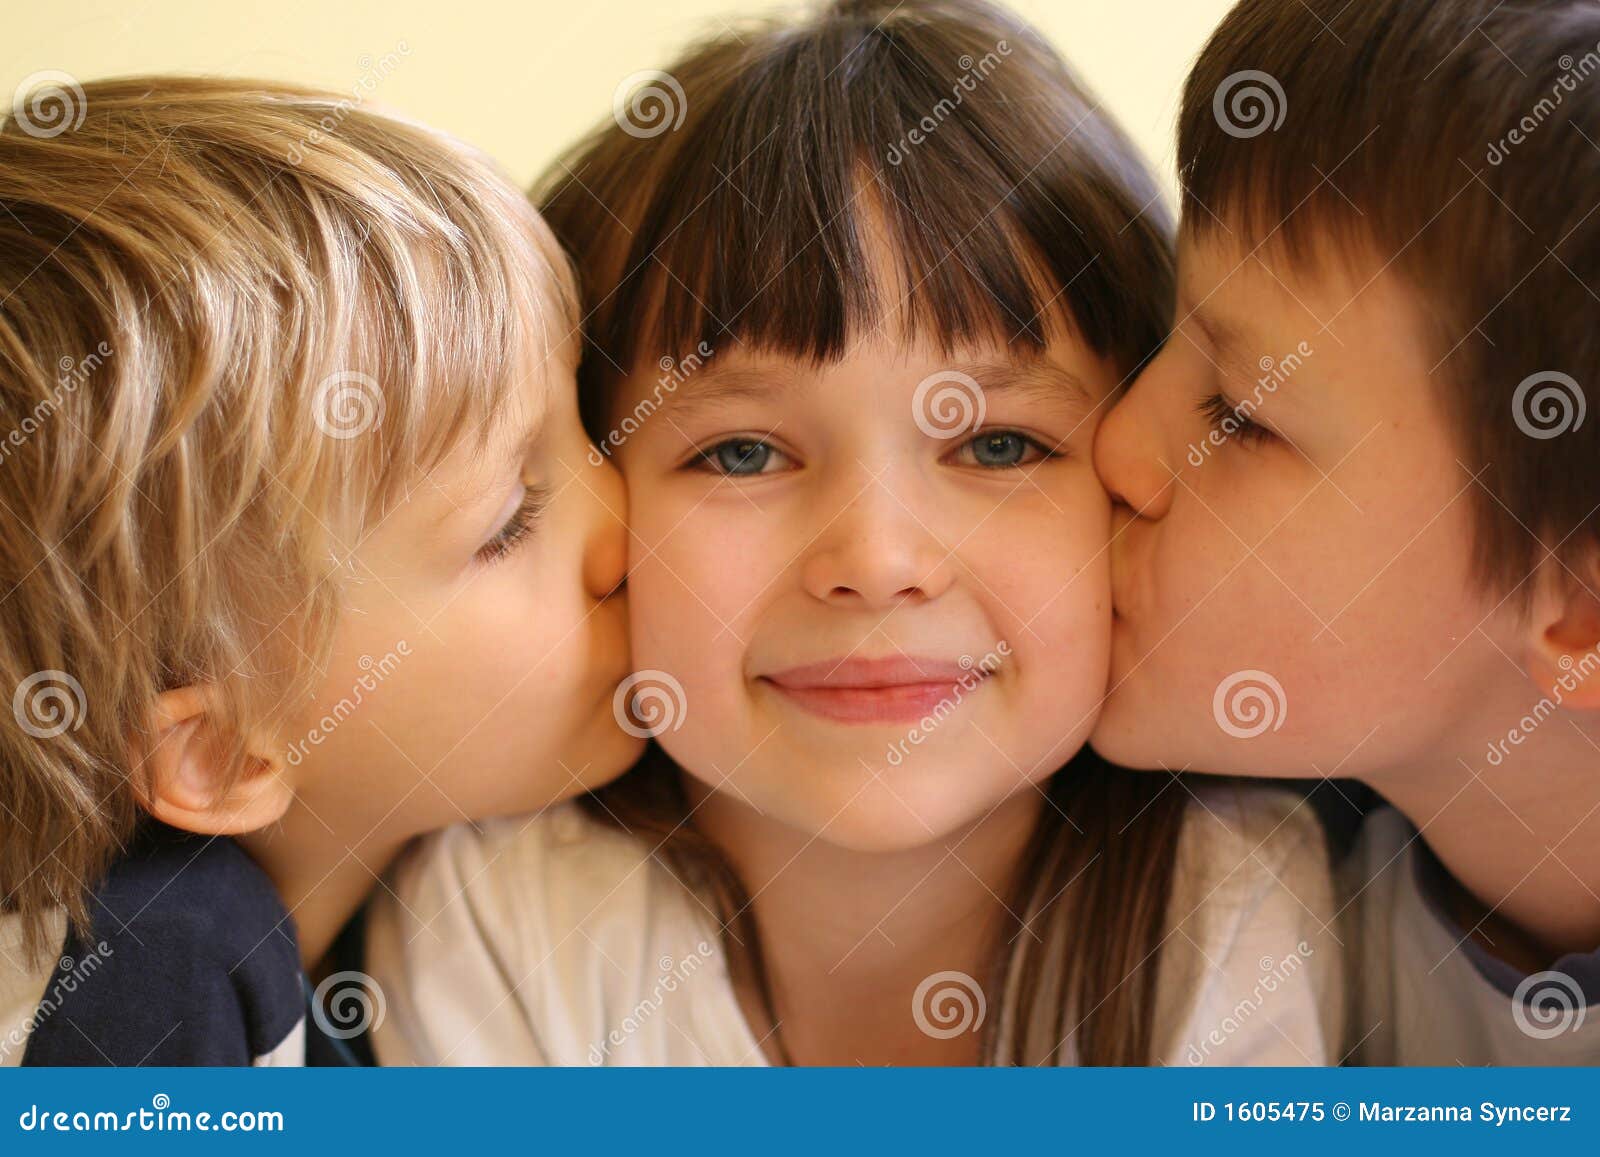 小女孩亲吻一个小男孩 库存图片. 图片 包括有 孩子, 空白, 童年, 亲吻, 表达式, 逗人喜爱, 学龄前儿童 - 65658025